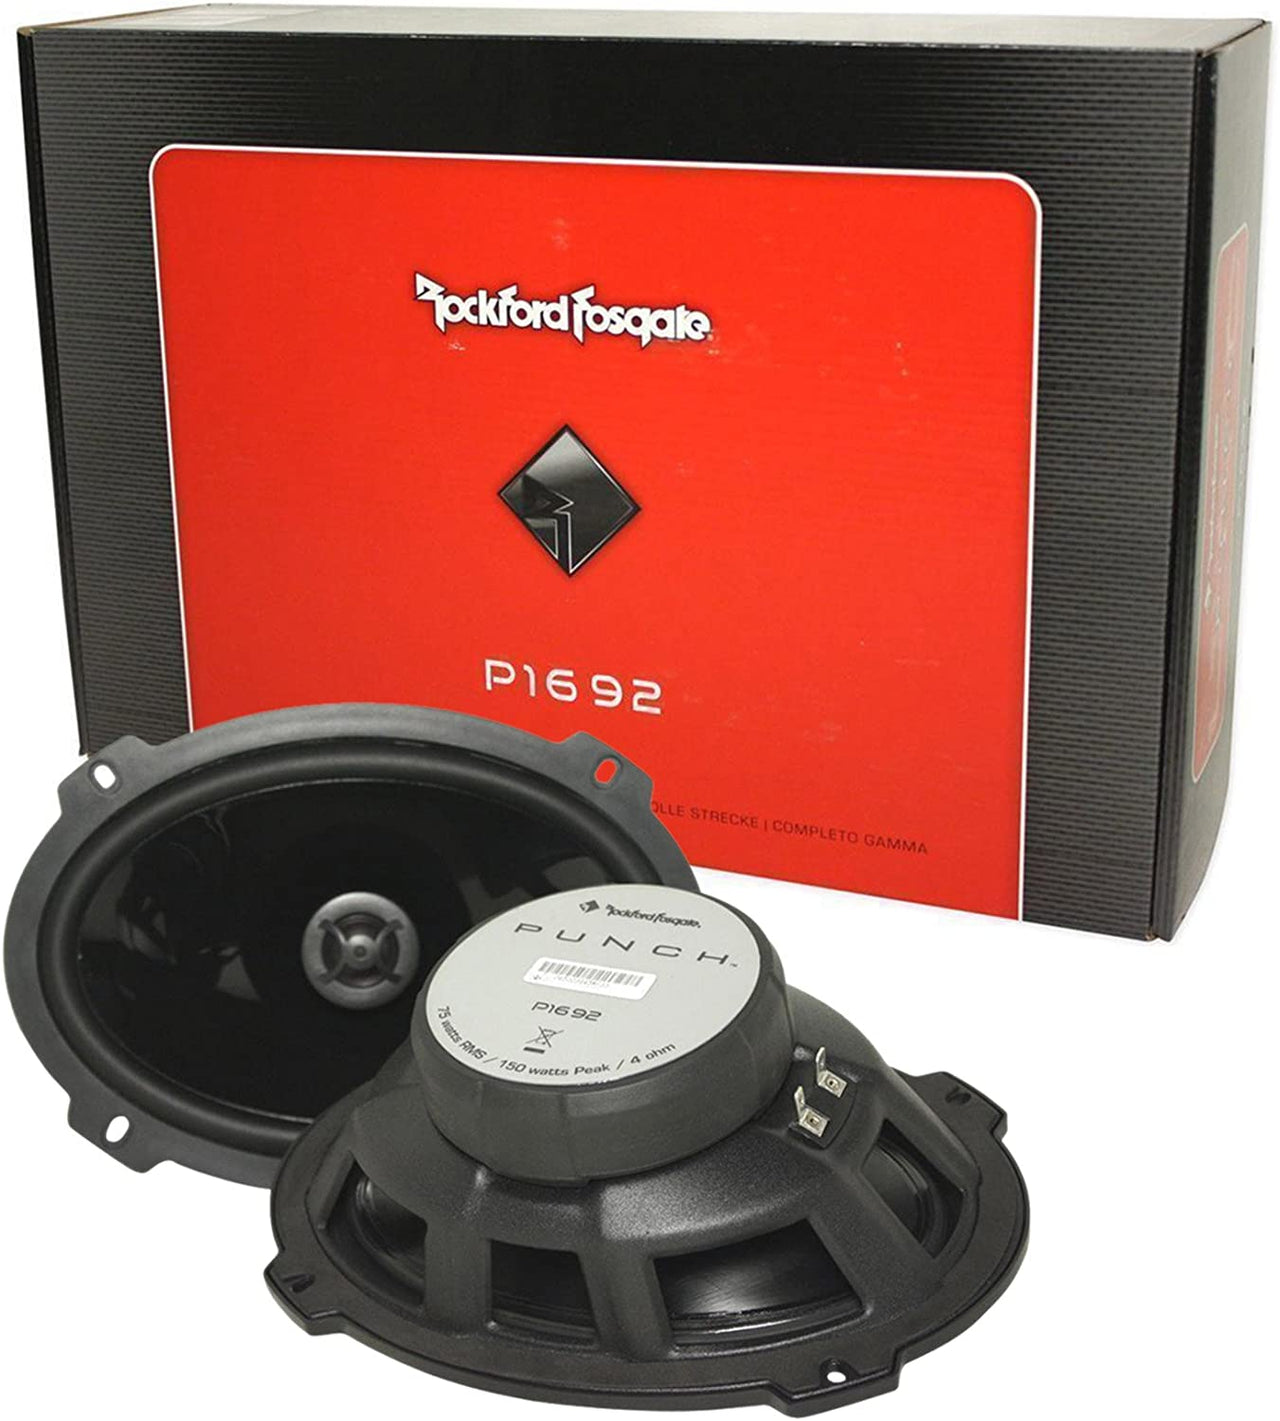 Rockford Fosgate P1683 6x8" 130W 3 Way + P1692 6x9" 150W 2 Way Speakers